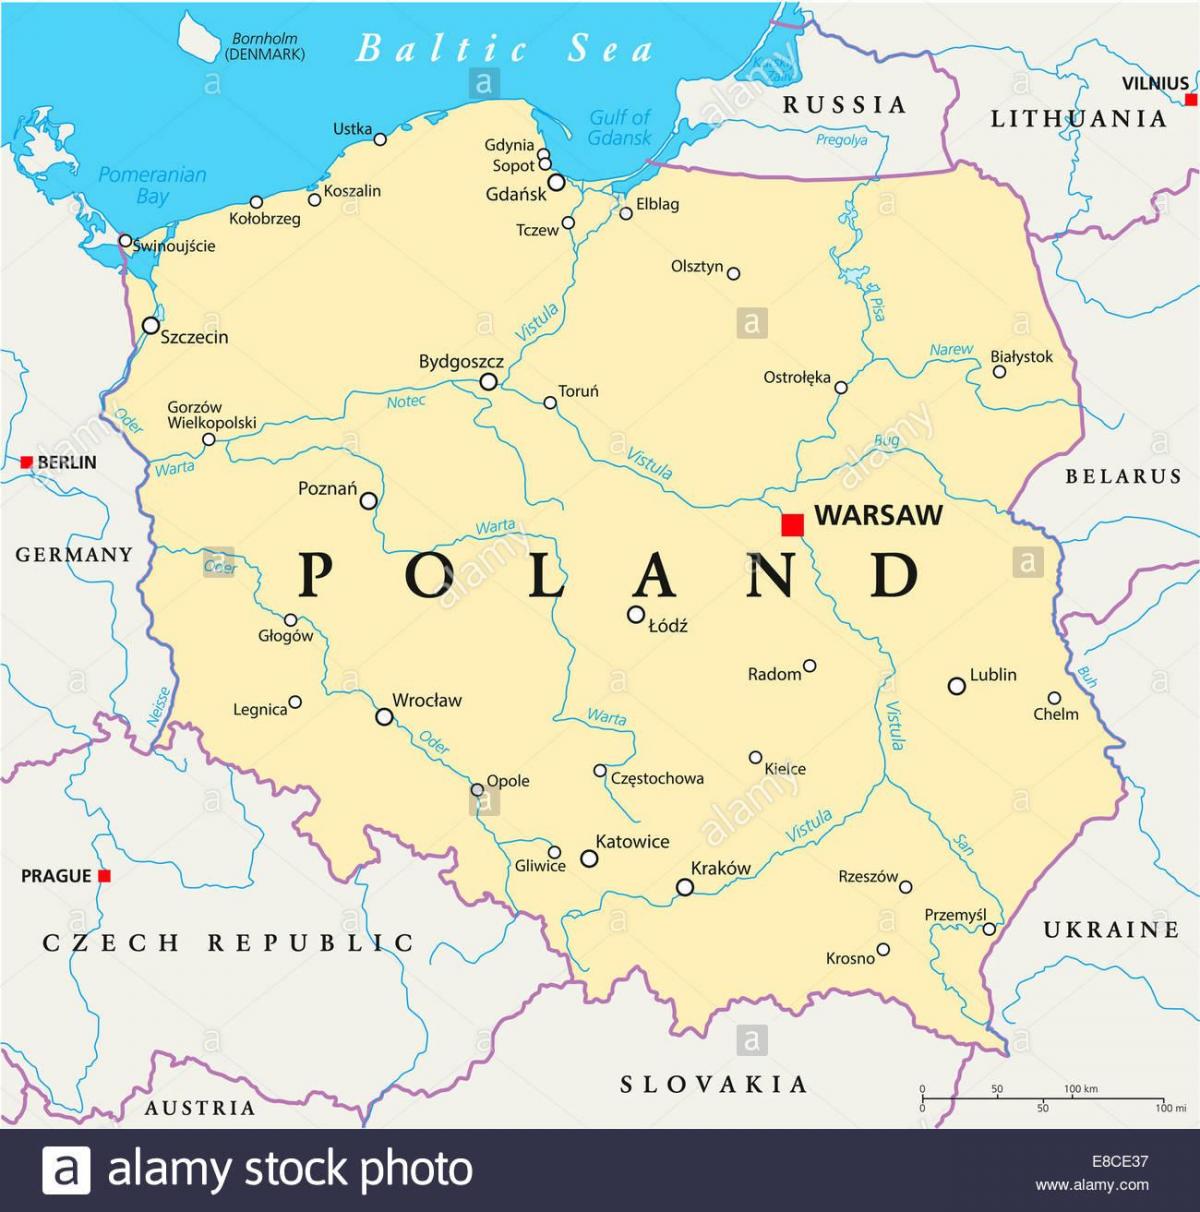 Warszawa placering på verdenskortet